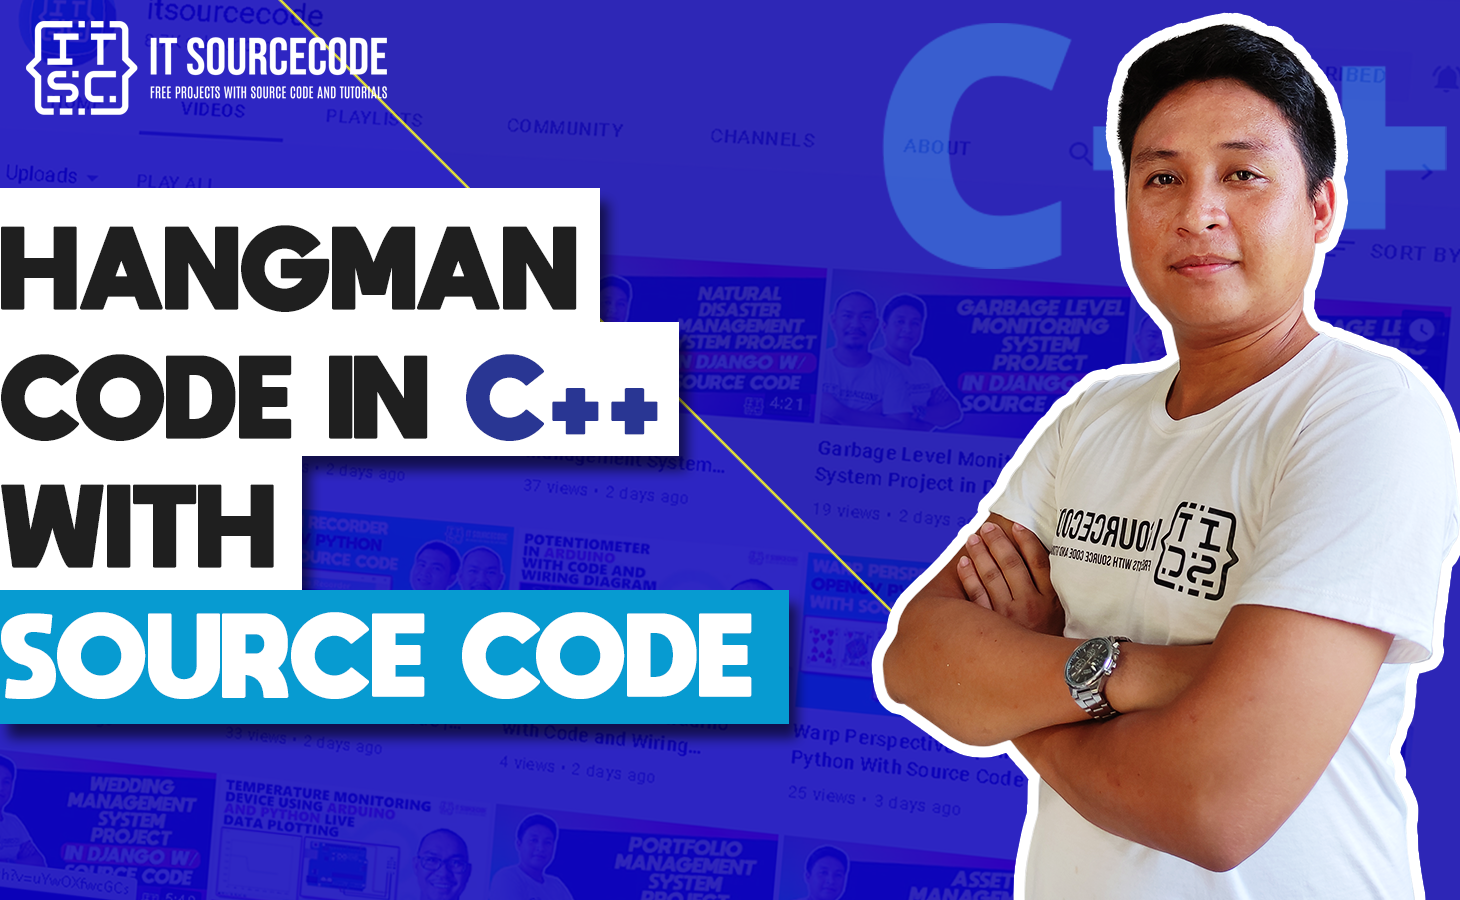 Hangman Code in C++ with Source Code